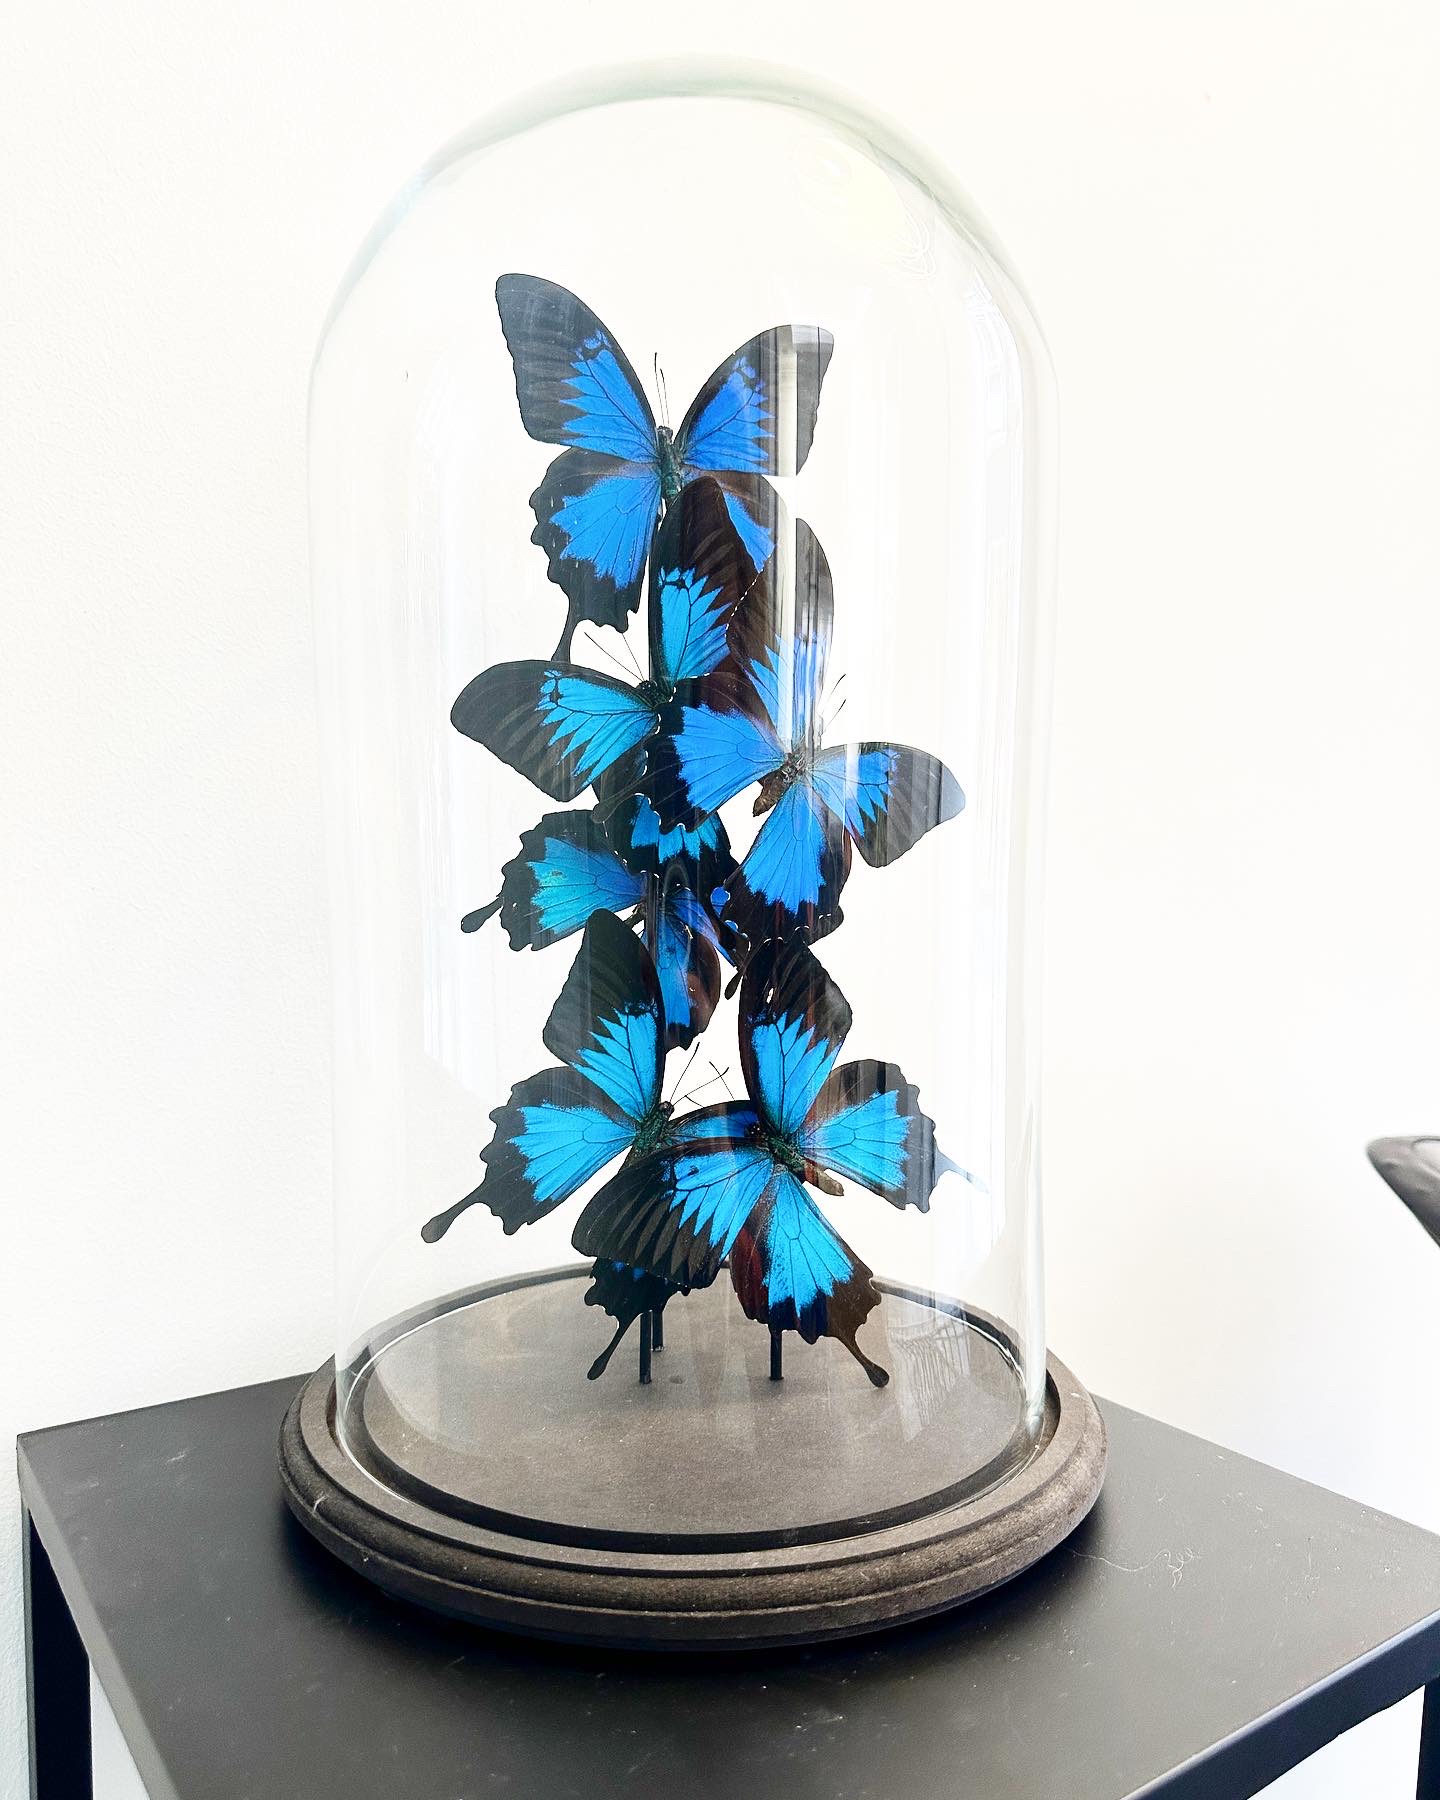 papillons-bleus-ulysse-globe-aurore-morisse-décoration-liege-antique-design-affaire-conclue0BE7D537-4EEA-4E8A-AEB5-D61AEF84C053-2